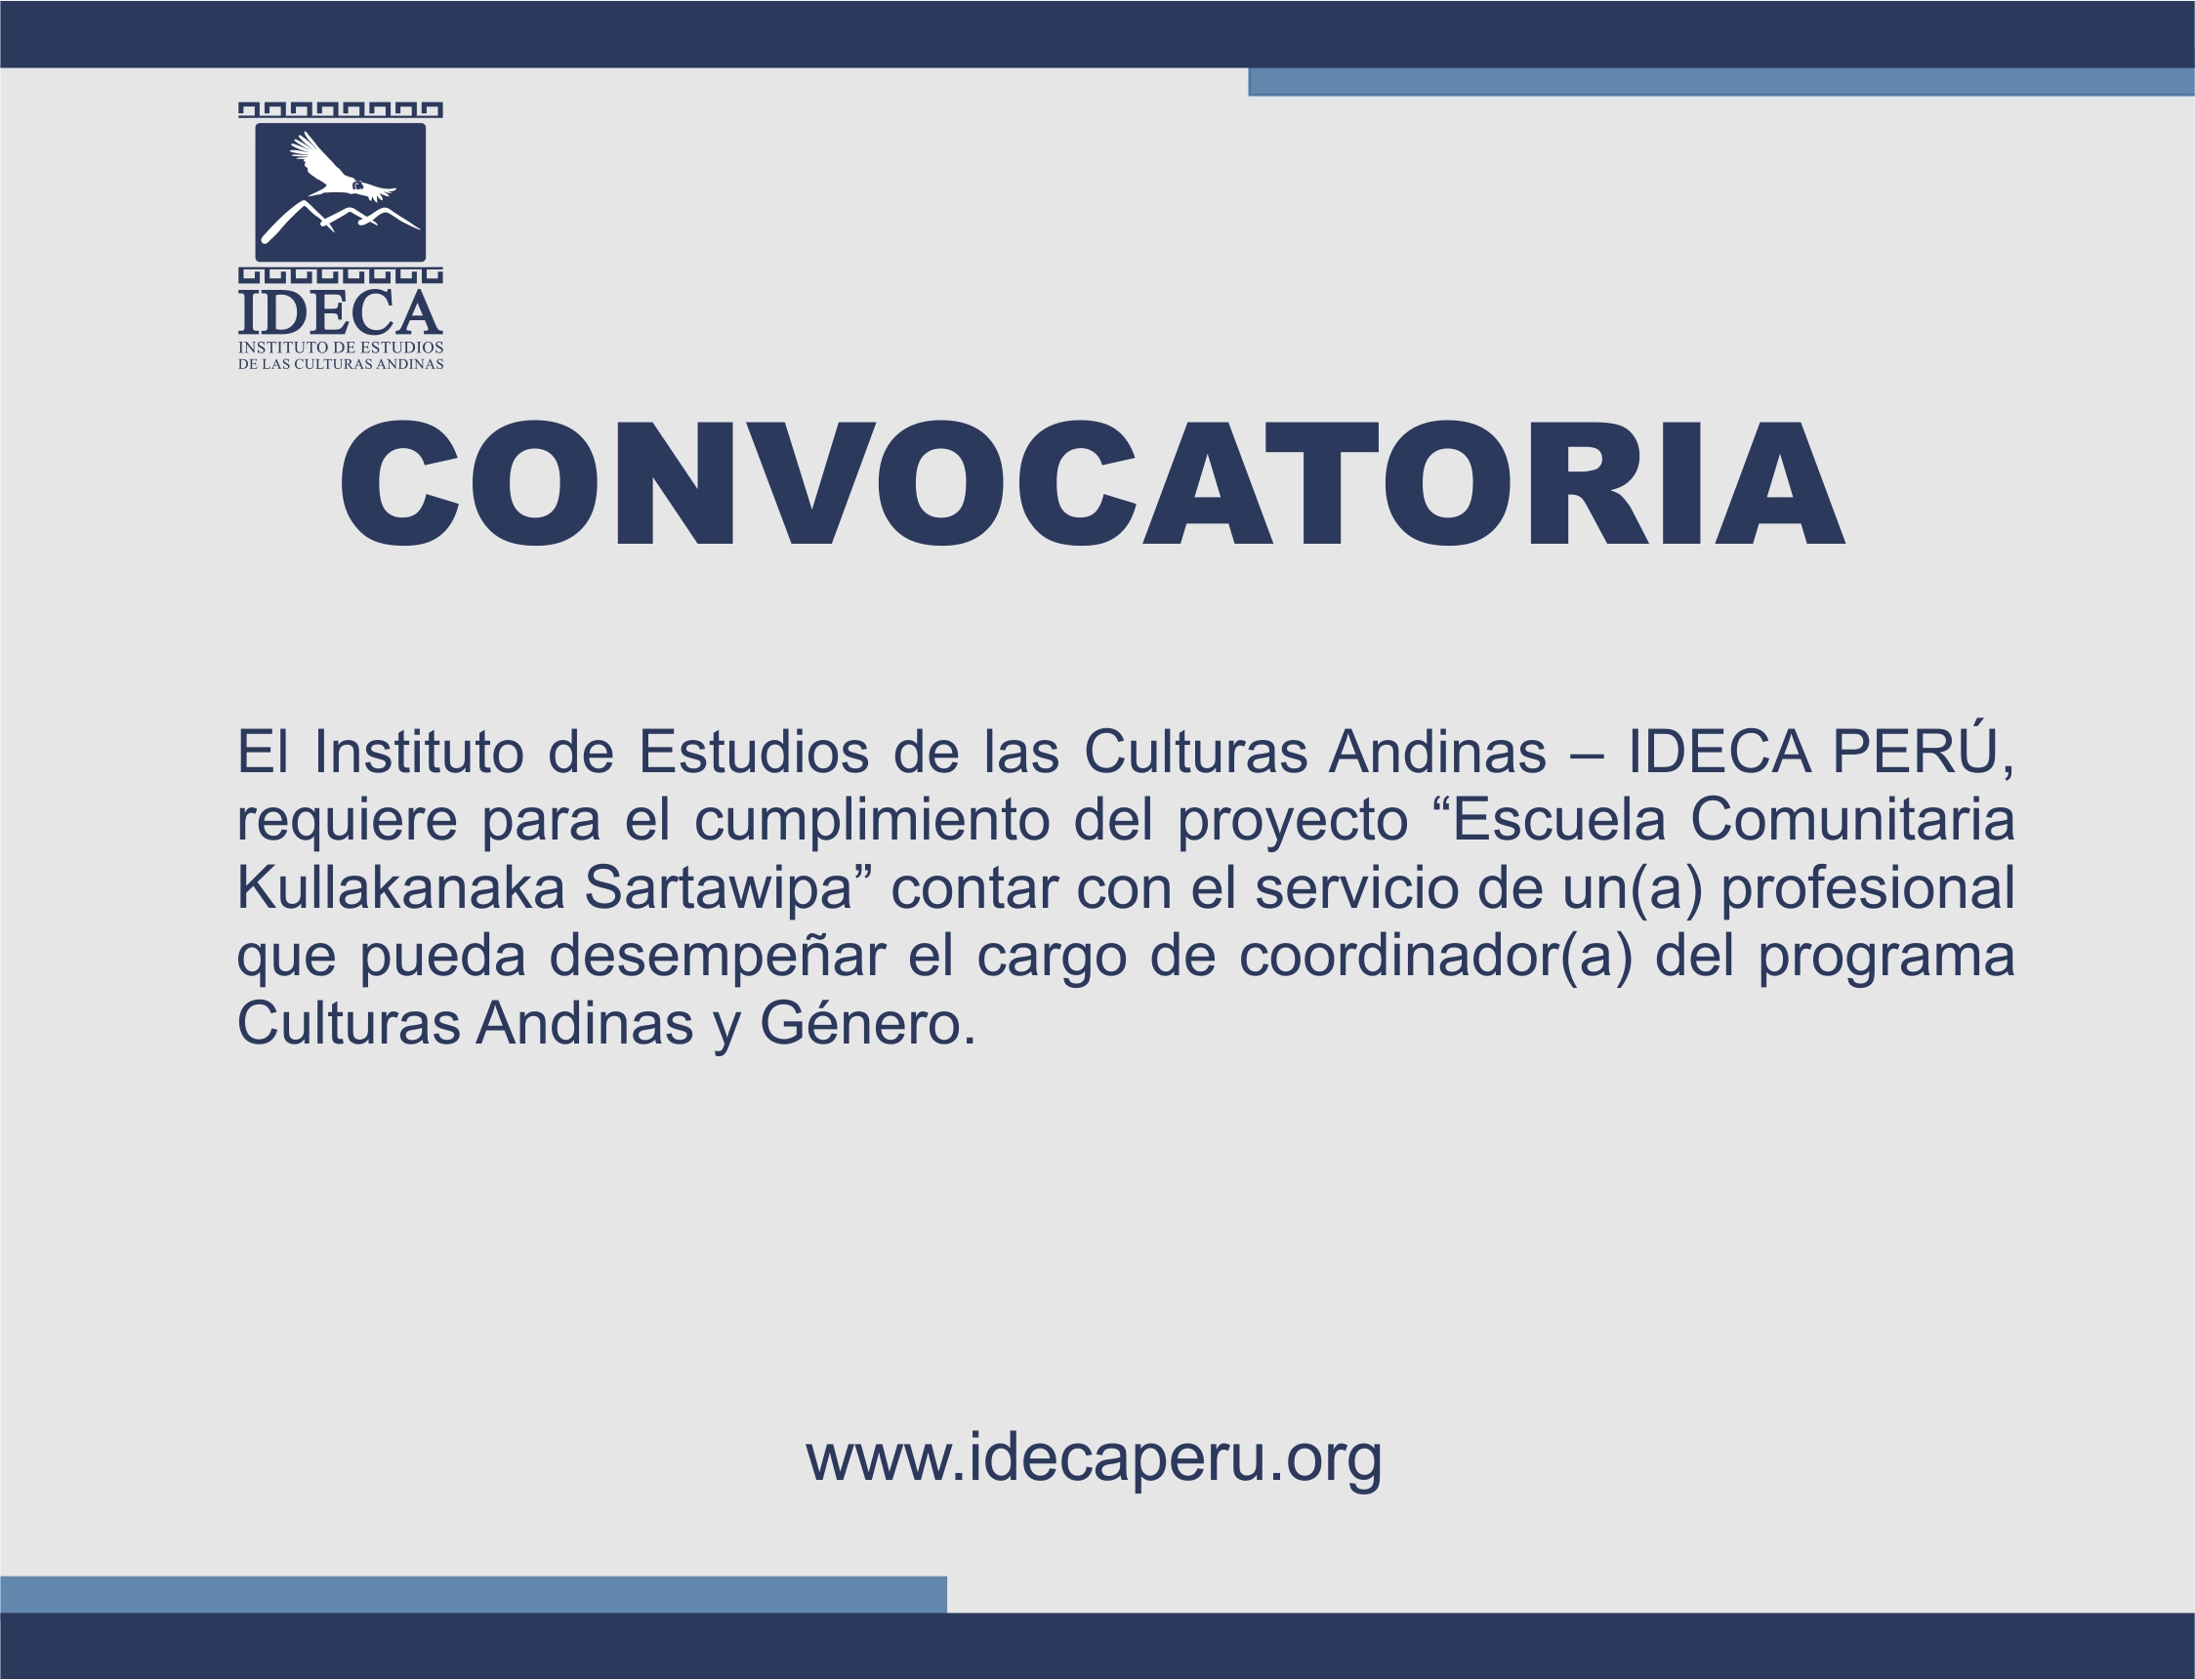 IDECA PERÚ CONVOCA AL PUESTO DE COORDINADOR(A) DEL PROGRAMA CULTURAS ANDINAS Y GÉNERO